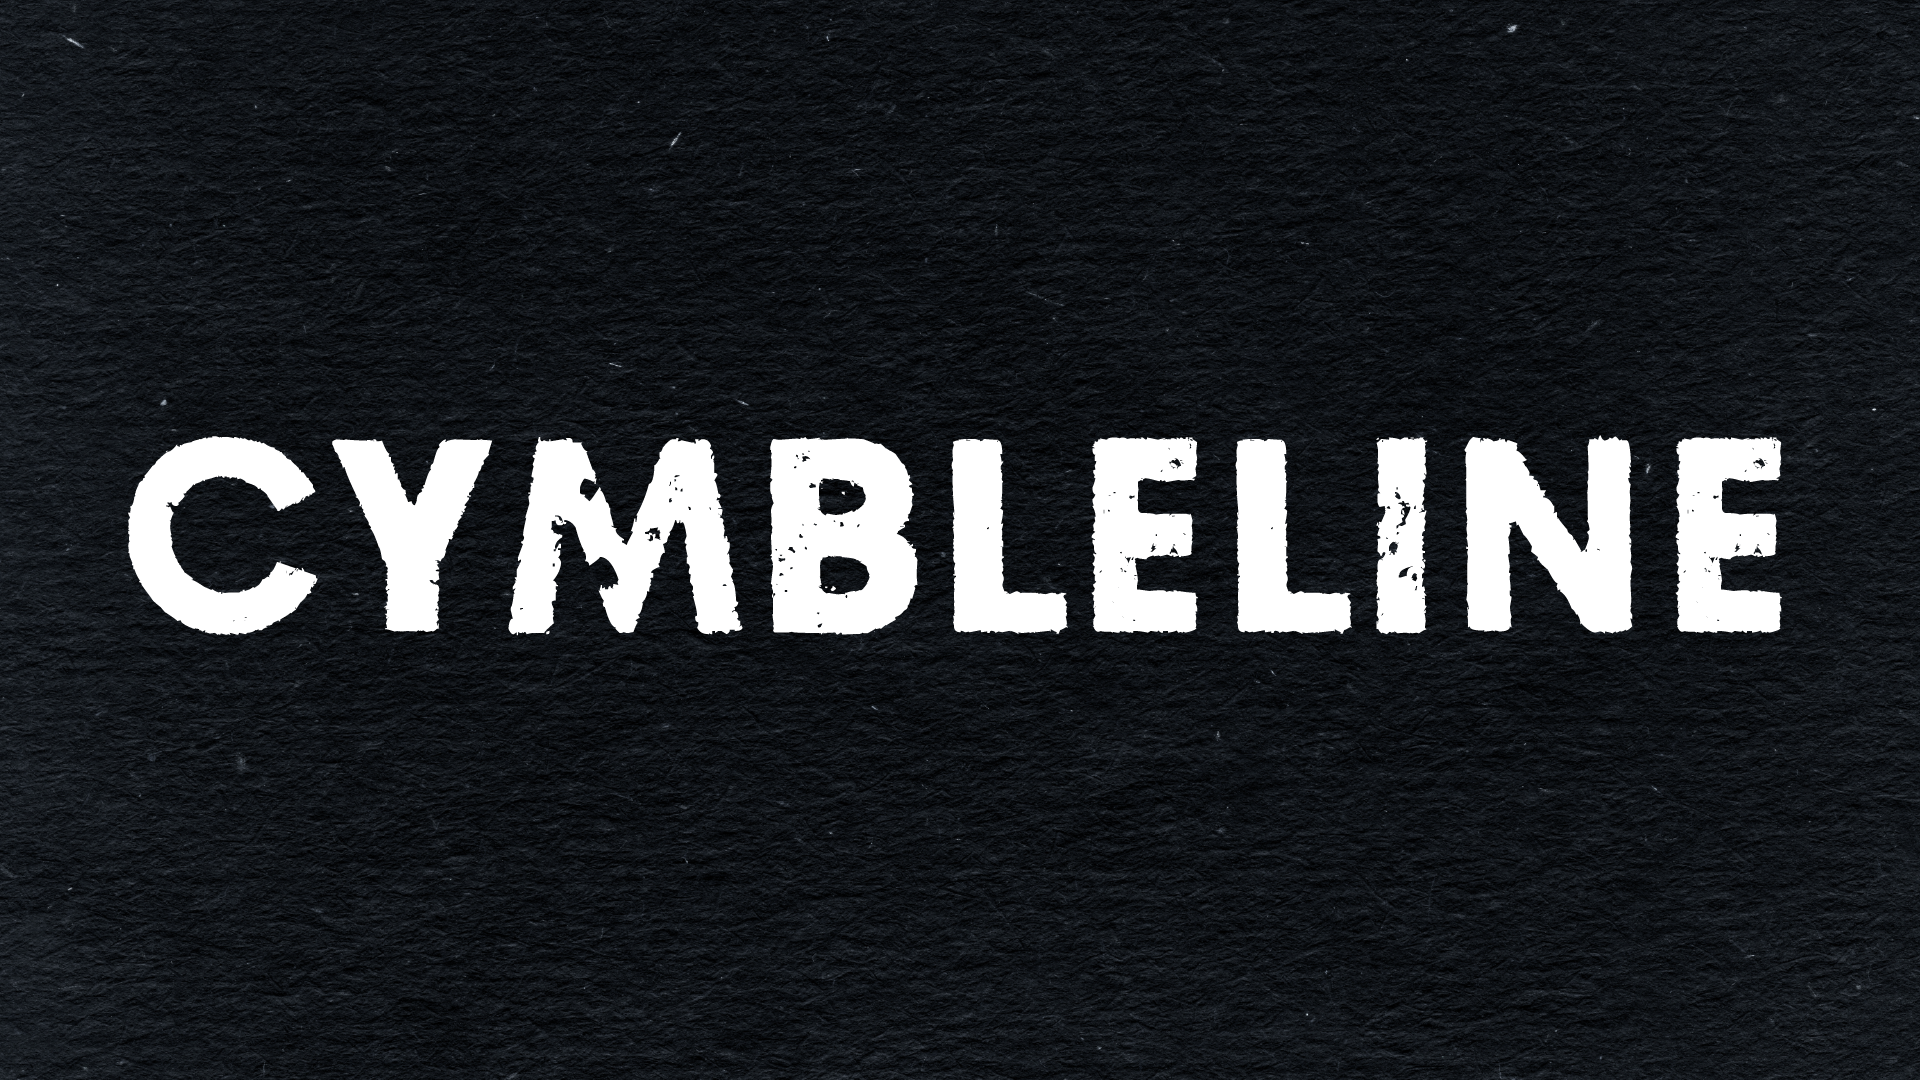 Cymbleline (Copy)